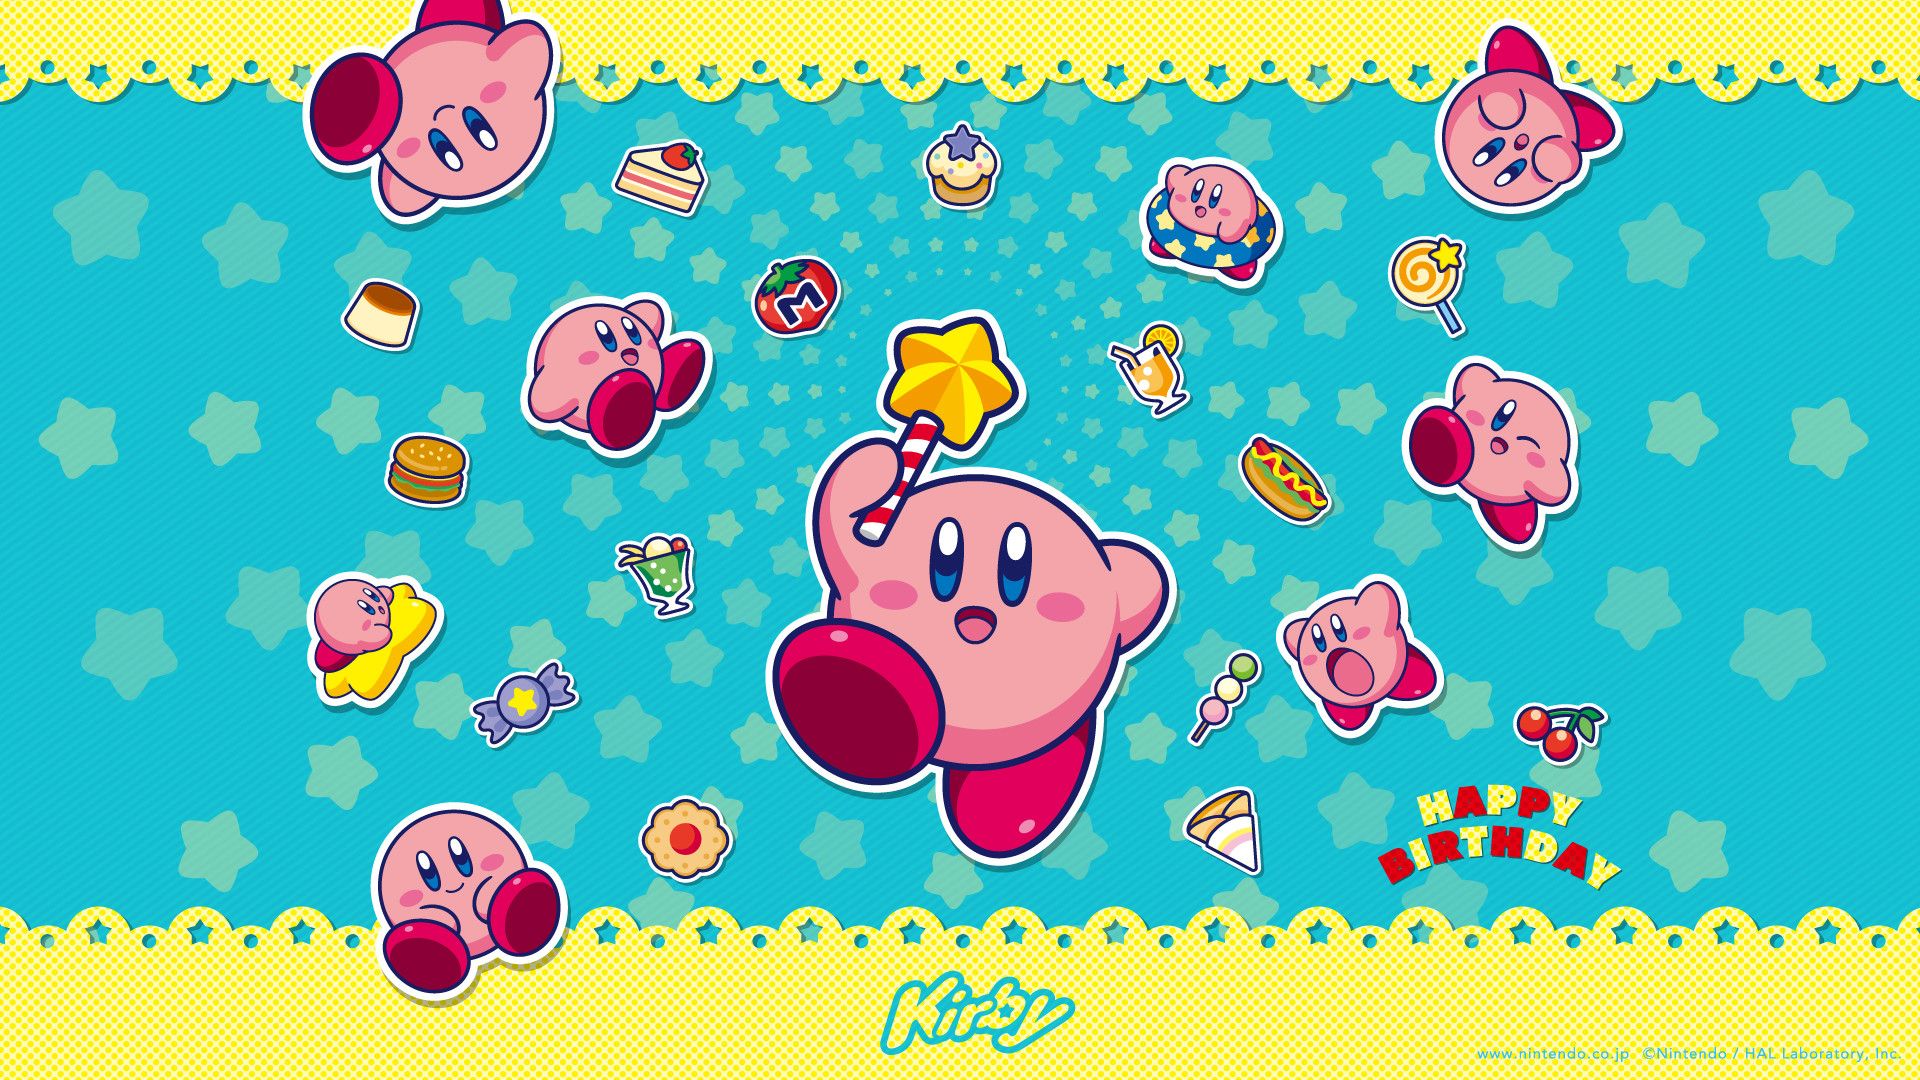 Nếu bạn đang tìm kiếm một hình nền Kirby đặc biệt cho màn hình của mình, hãy thử khám phá những tùy chọn tuyệt vời trên WallpaperDog. Từ các hình nền đơn giản nhưng đầy màu sắc cho đến các hình ảnh phức tạp về các khối vuông hình hộp, bạn sẽ tìm thấy một hình nền Kirby phù hợp với phong cách của mình.